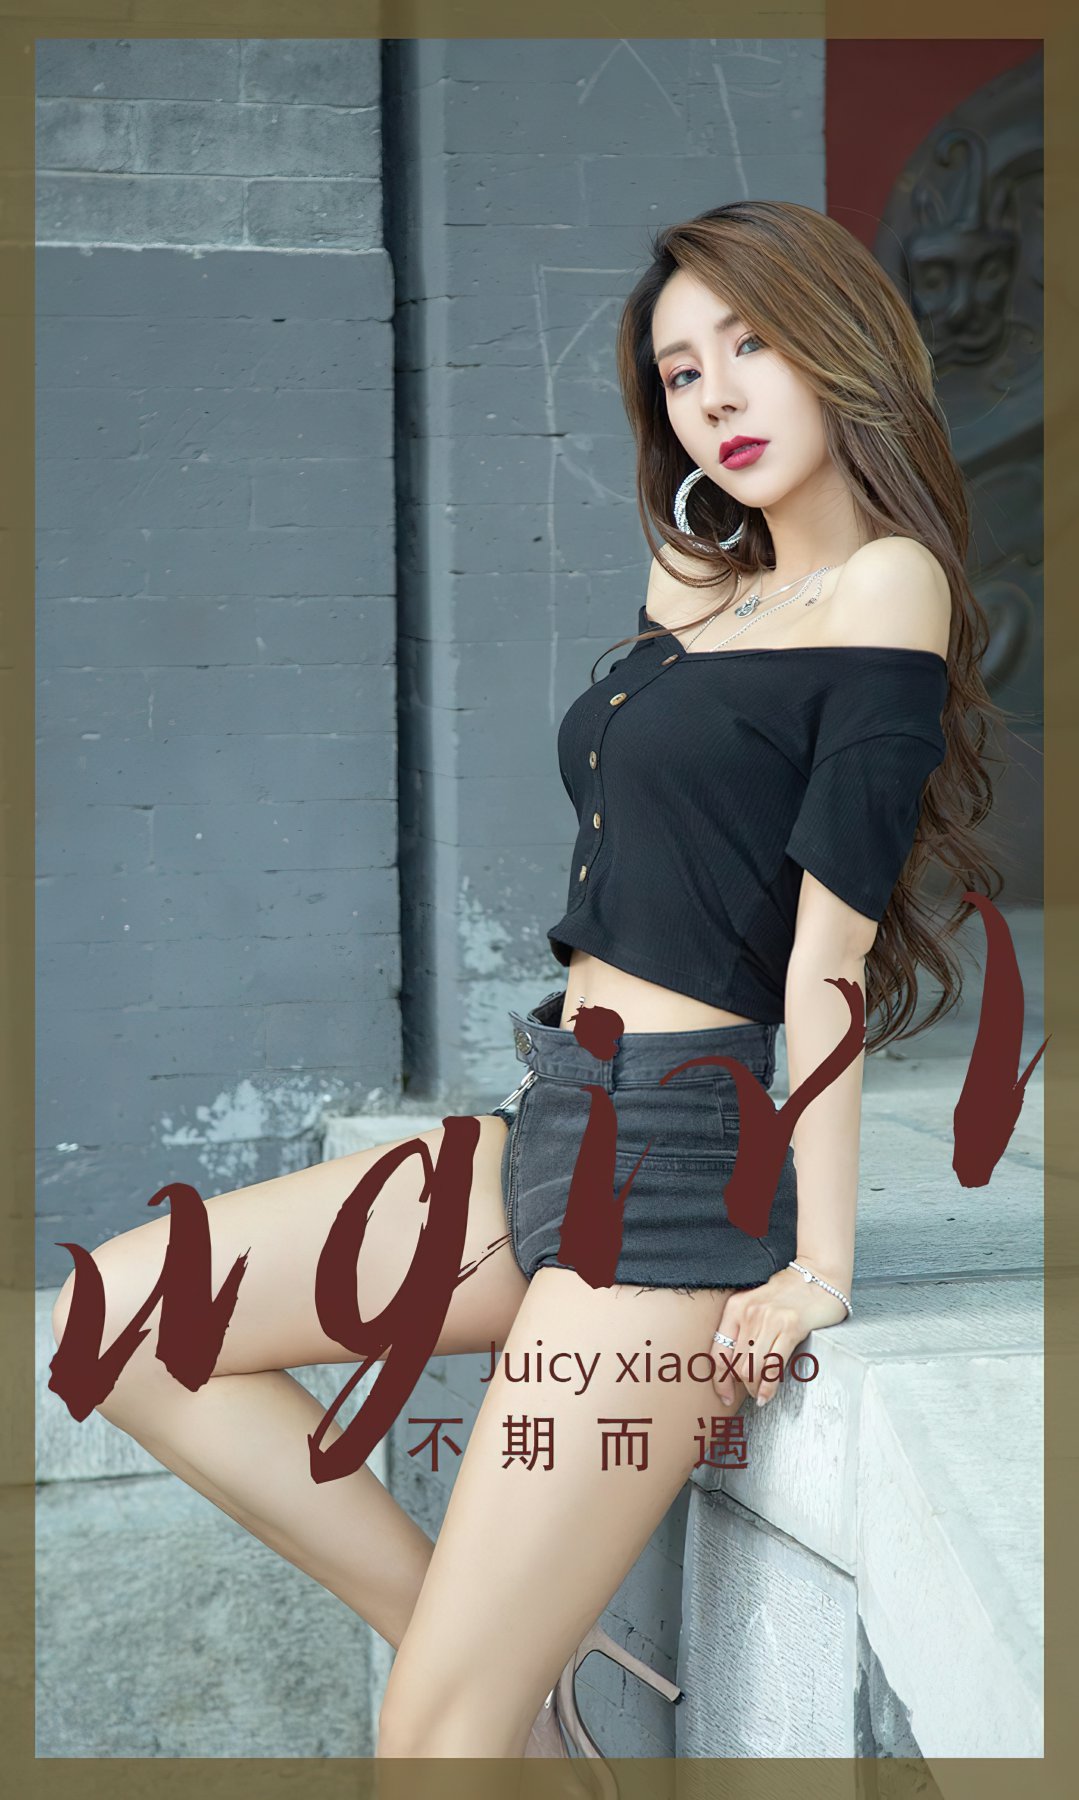 [Ugirls尤果网]爱尤物专辑 No.2393 Juicy xiaoxiao 不期而遇 1 